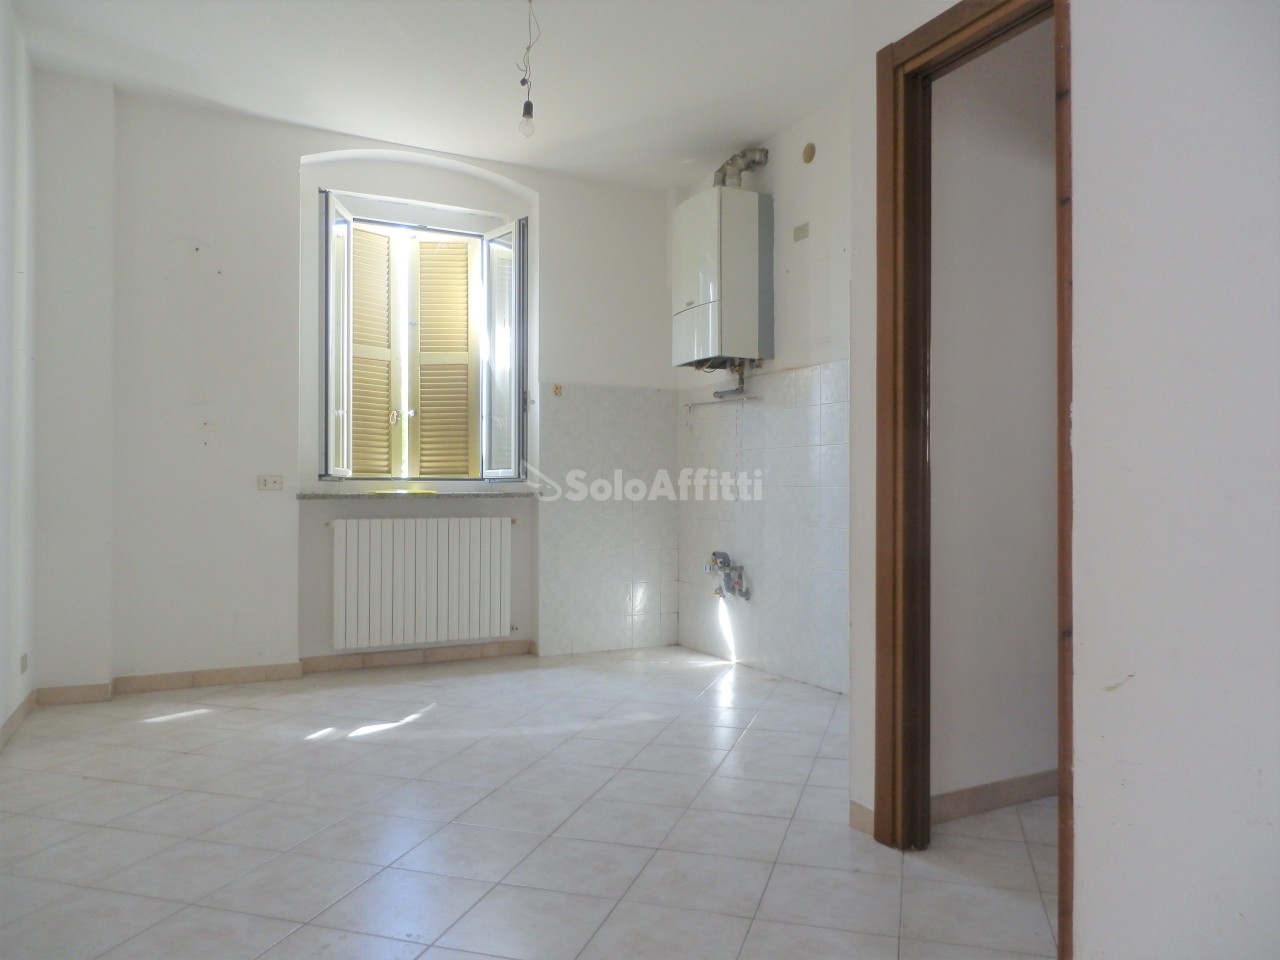 Appartamento in affitto a Lurago Marinone, 2 locali, prezzo € 480 | PortaleAgenzieImmobiliari.it